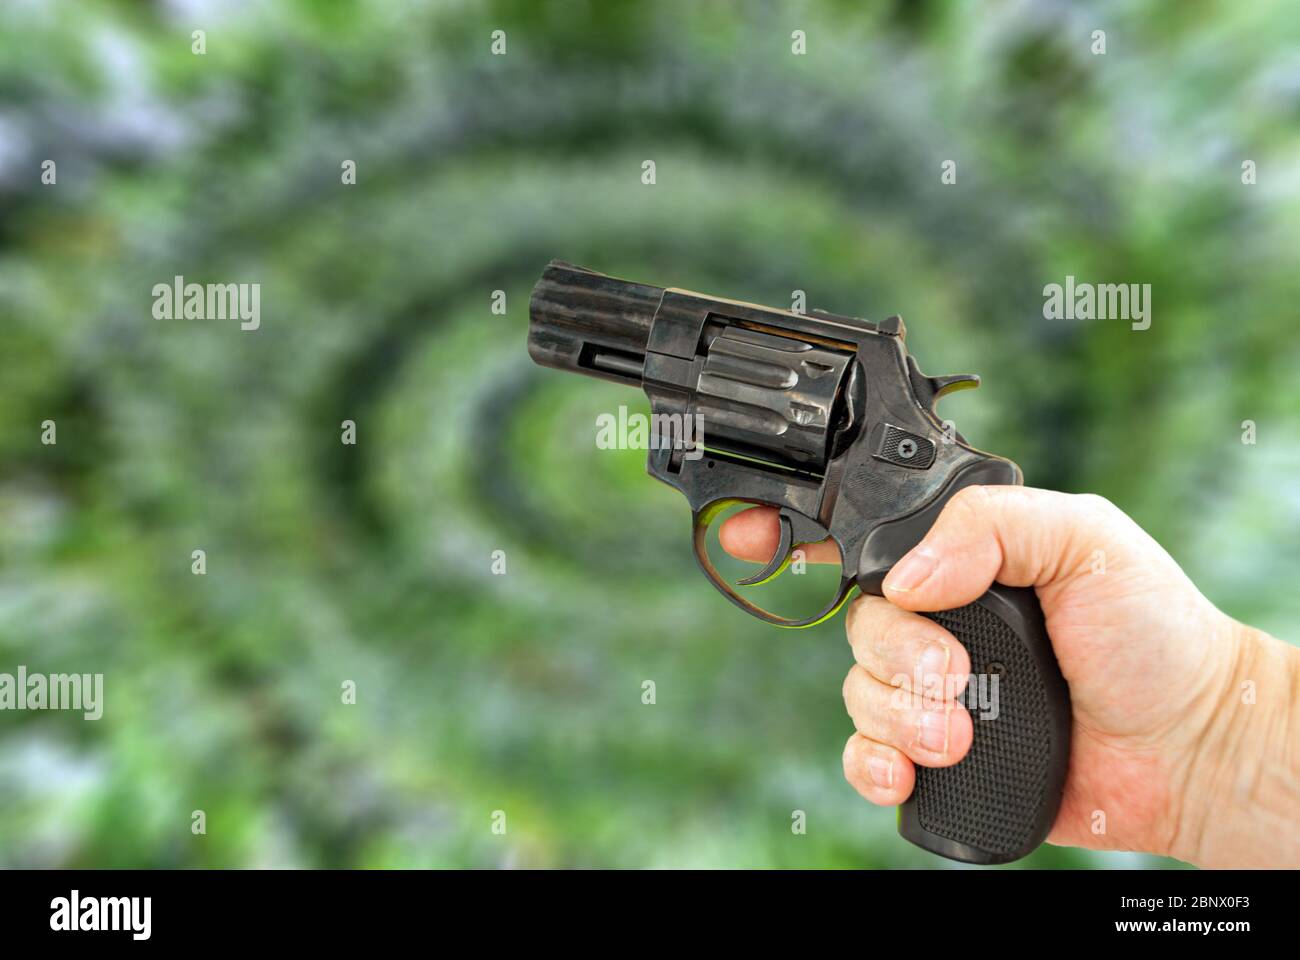 Pistolet en main sur fond vert flou sous forme de spirale Photo Stock -  Alamy